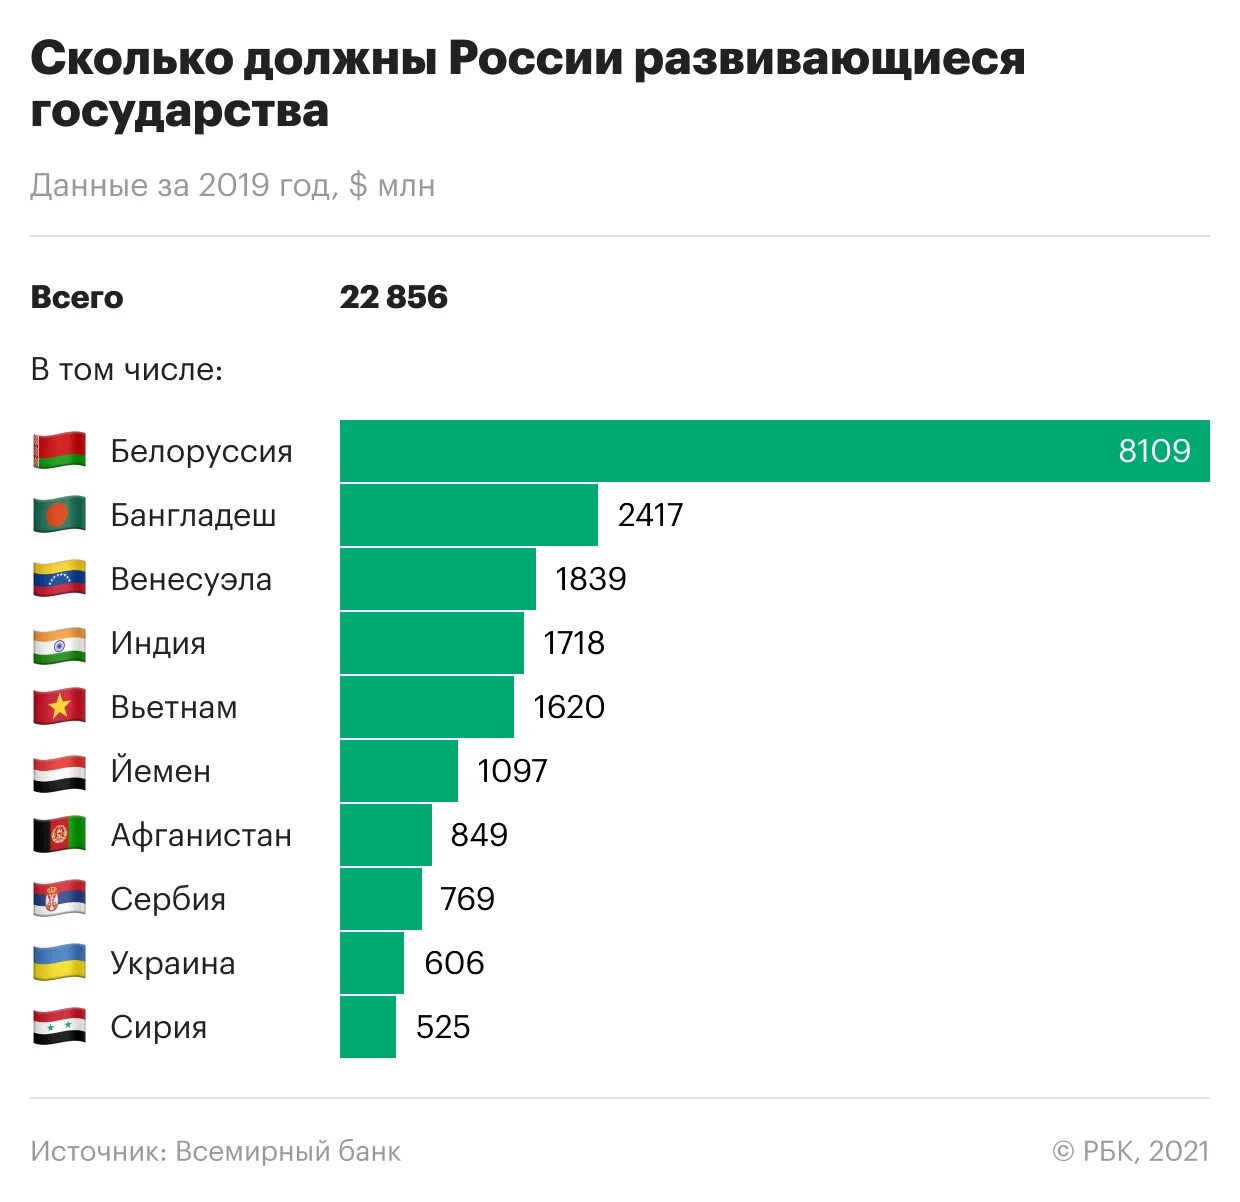 В необходимую страну также. Самые крупные страны должники. Список стран должников России. Сколько страны должны России. Долг стран перед Россией.